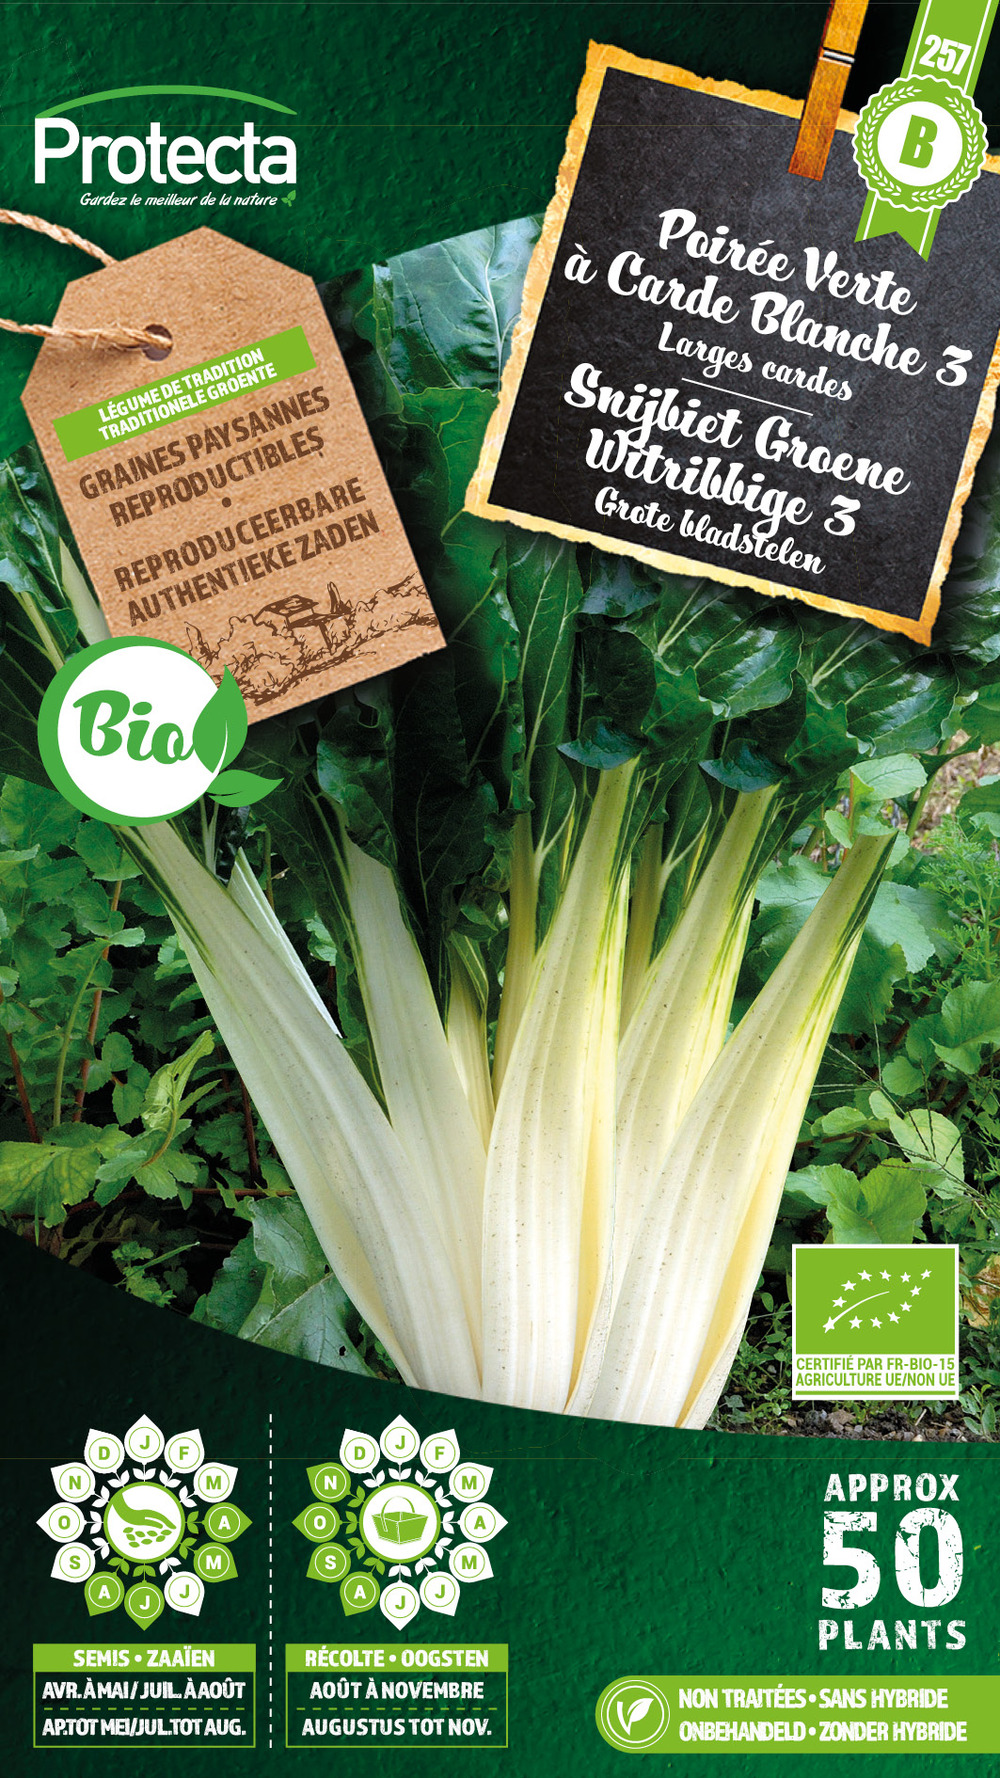 Poirée verte à carde blanche 3 bio – protecta graines paysanne - ca. 4 gr